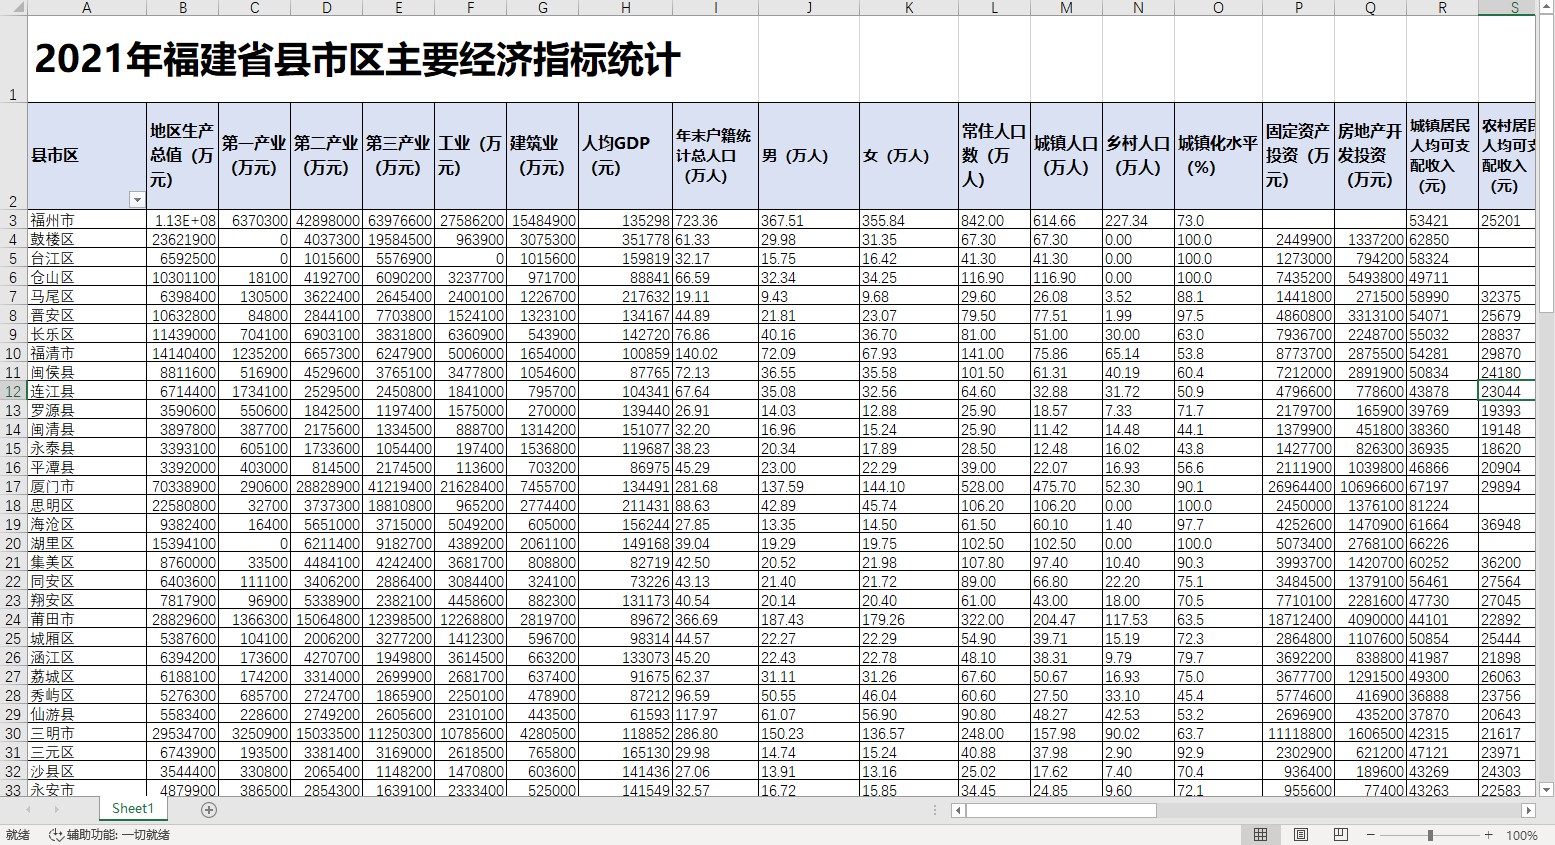 2021年福建省县市区主要经济指标统计